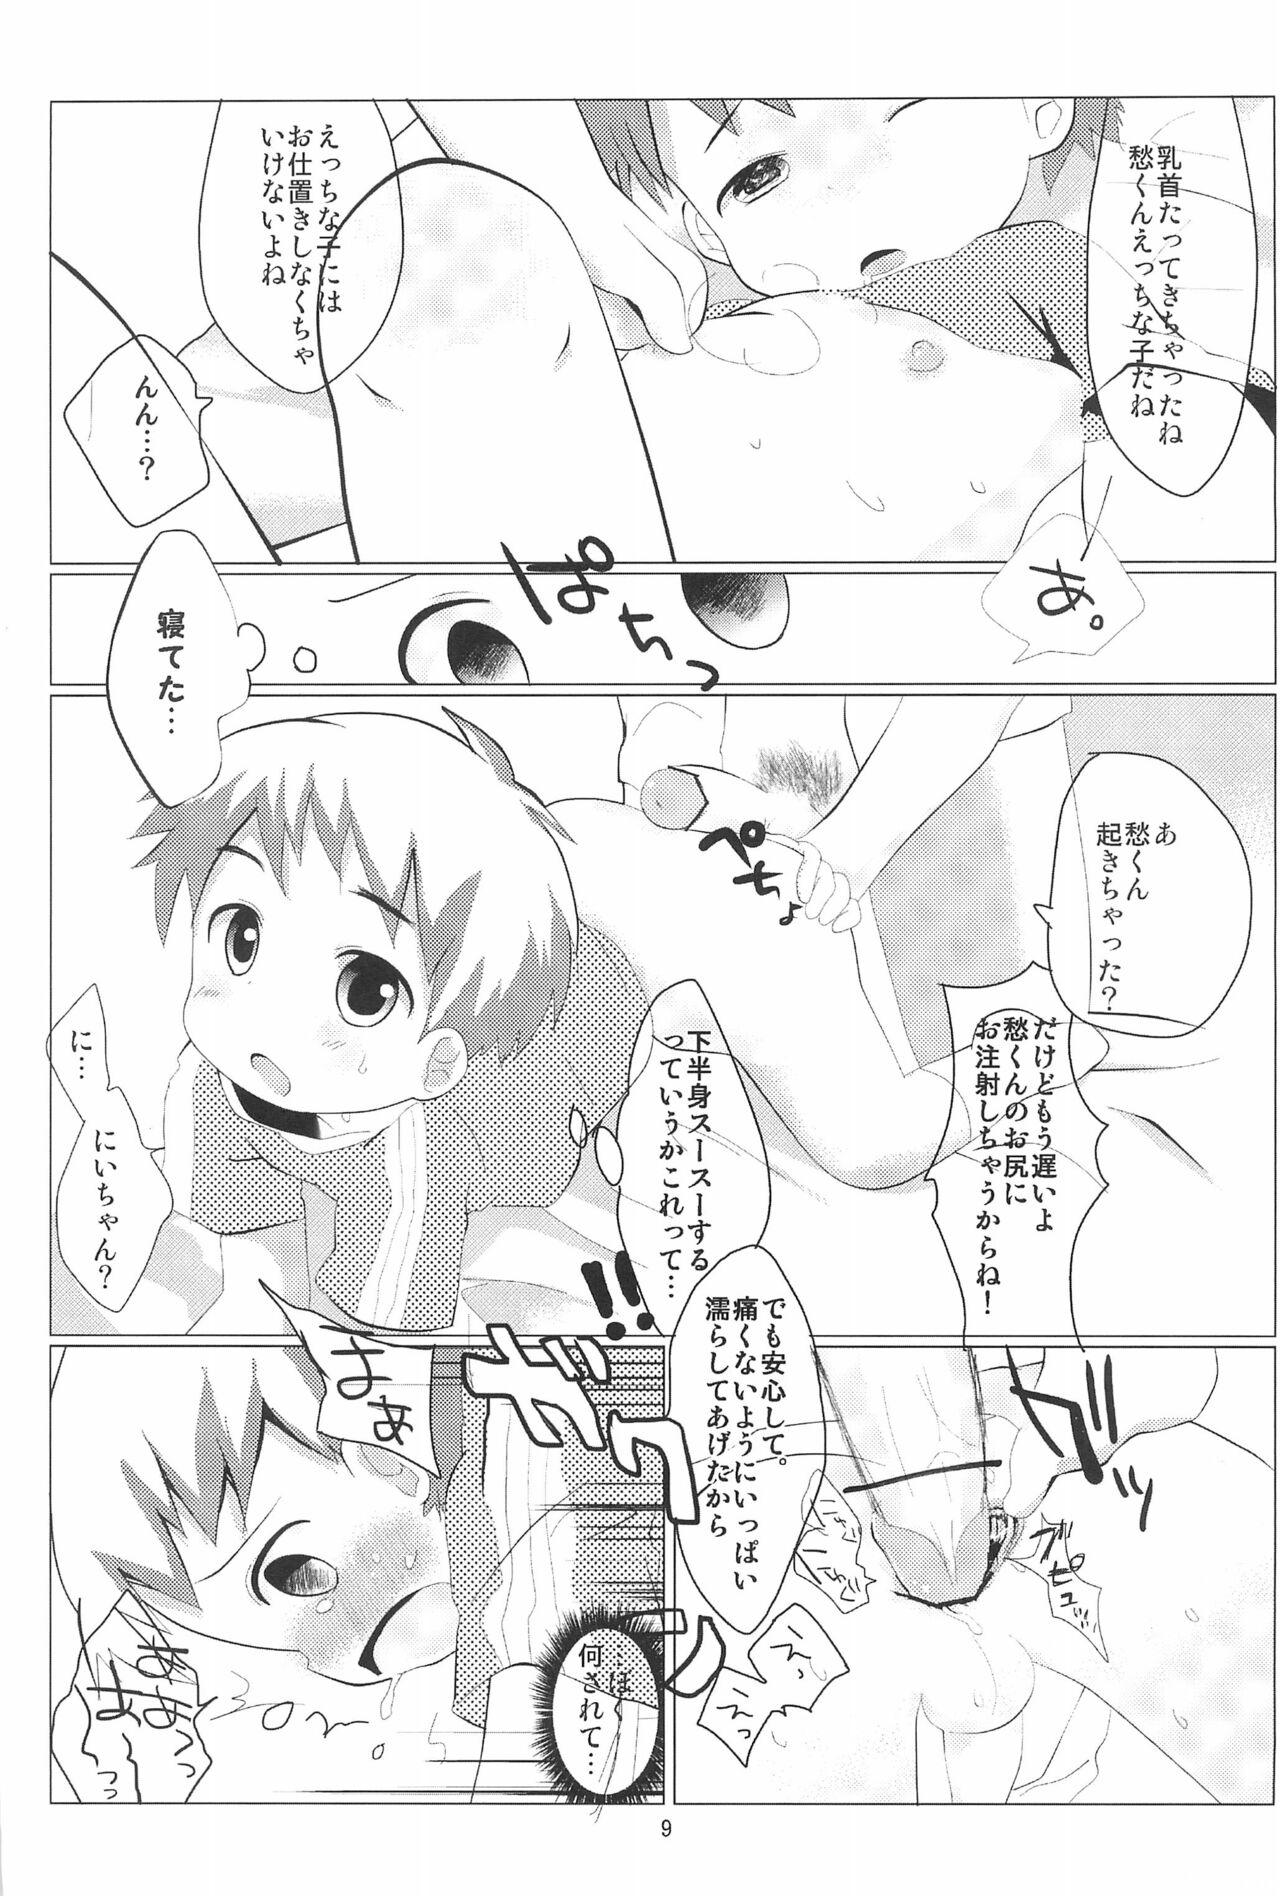 Anal Gape Itsunimo mashite Kotoshi no Natsu wa Atsui kara Nii-chan no Atama wa Kurutteshimatta - Original Bwc - Page 9